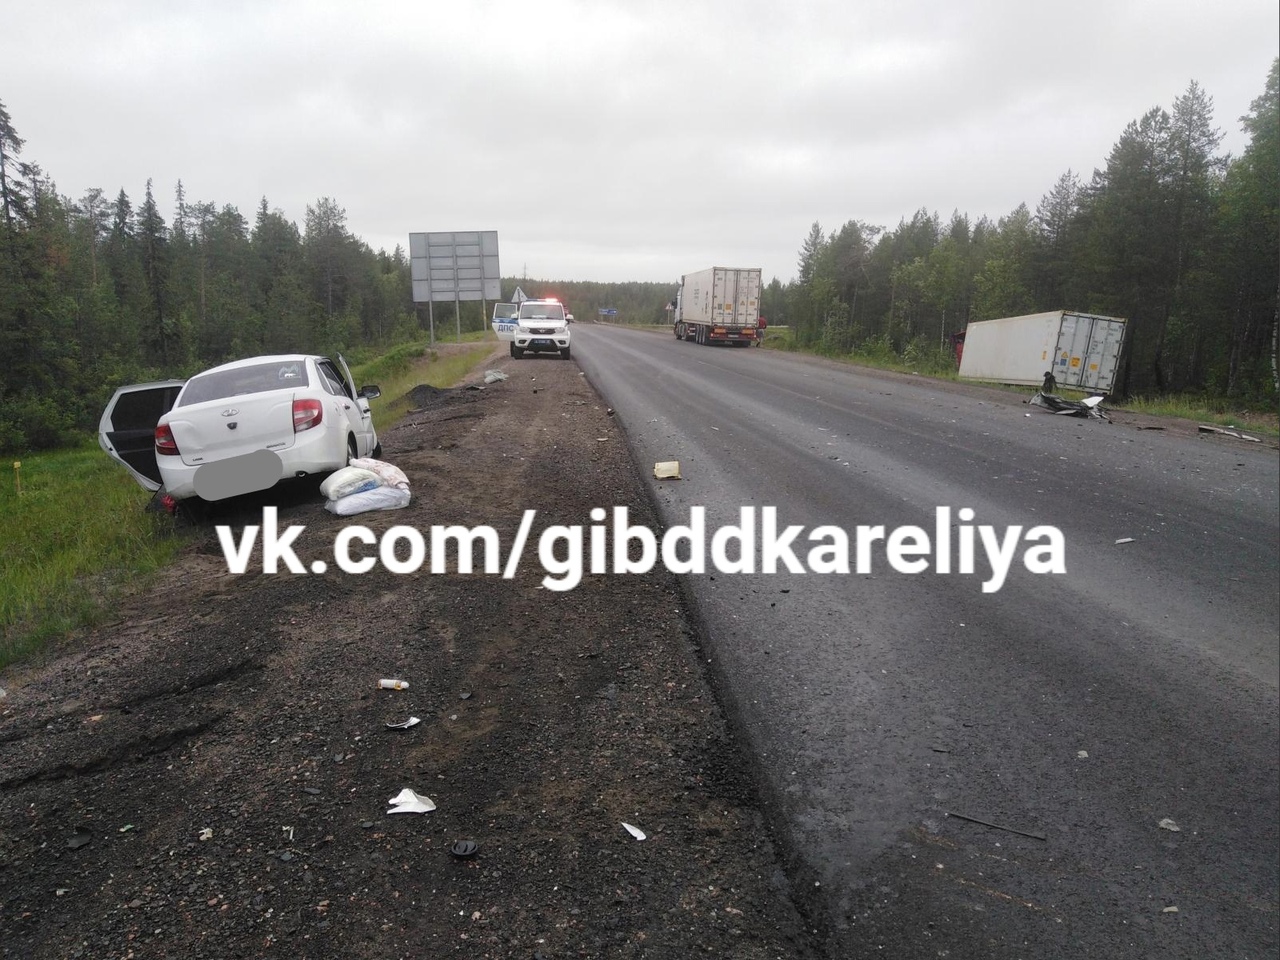 ГИБДД назвала виновного в смертельной аварии на трассе «Кола» в Карелии (ФОТО)